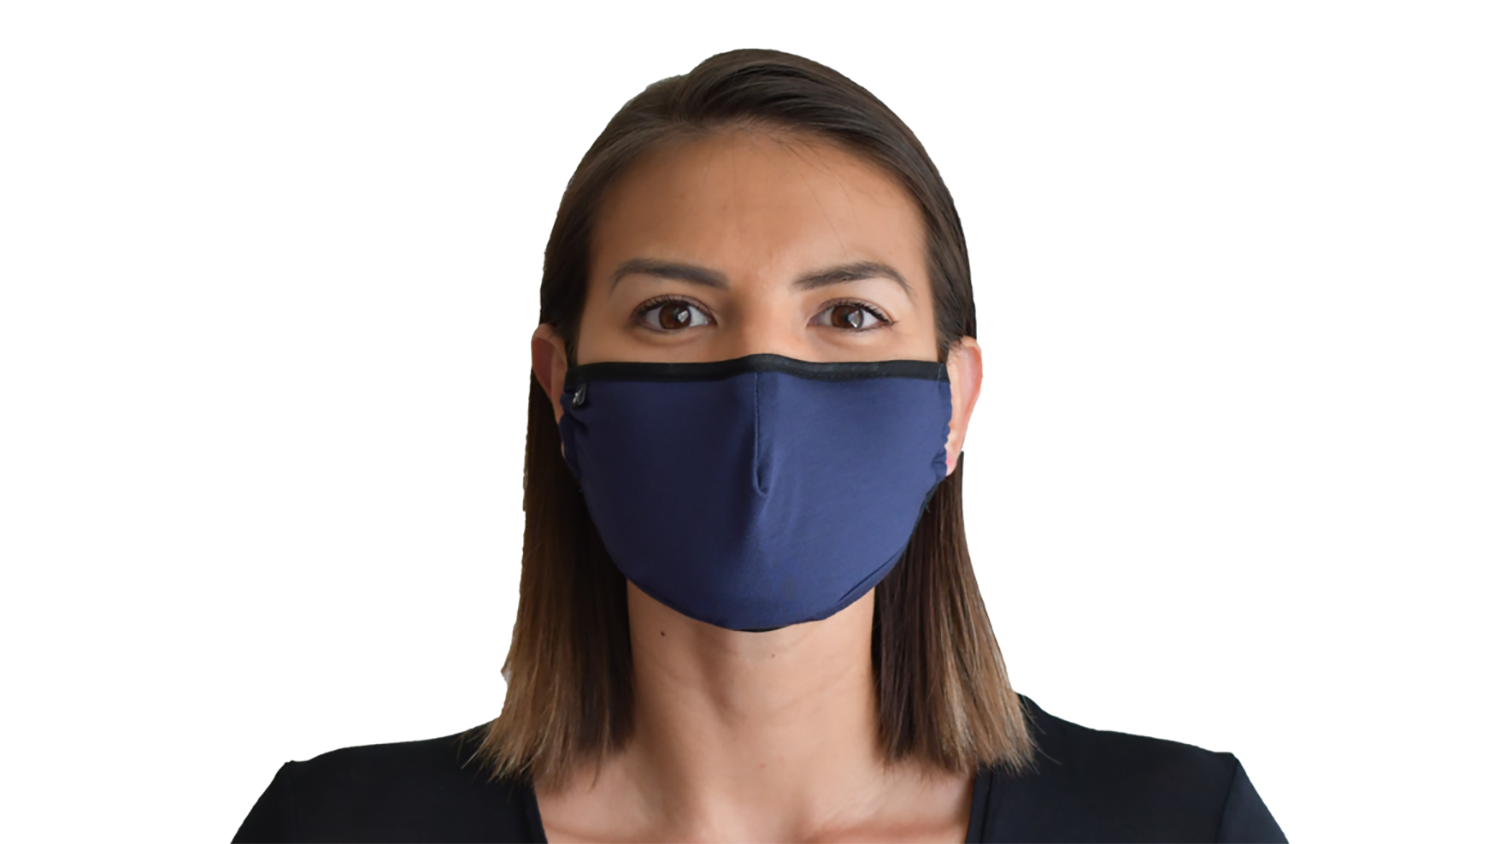 33 Best Stylish Protective Masks 2020